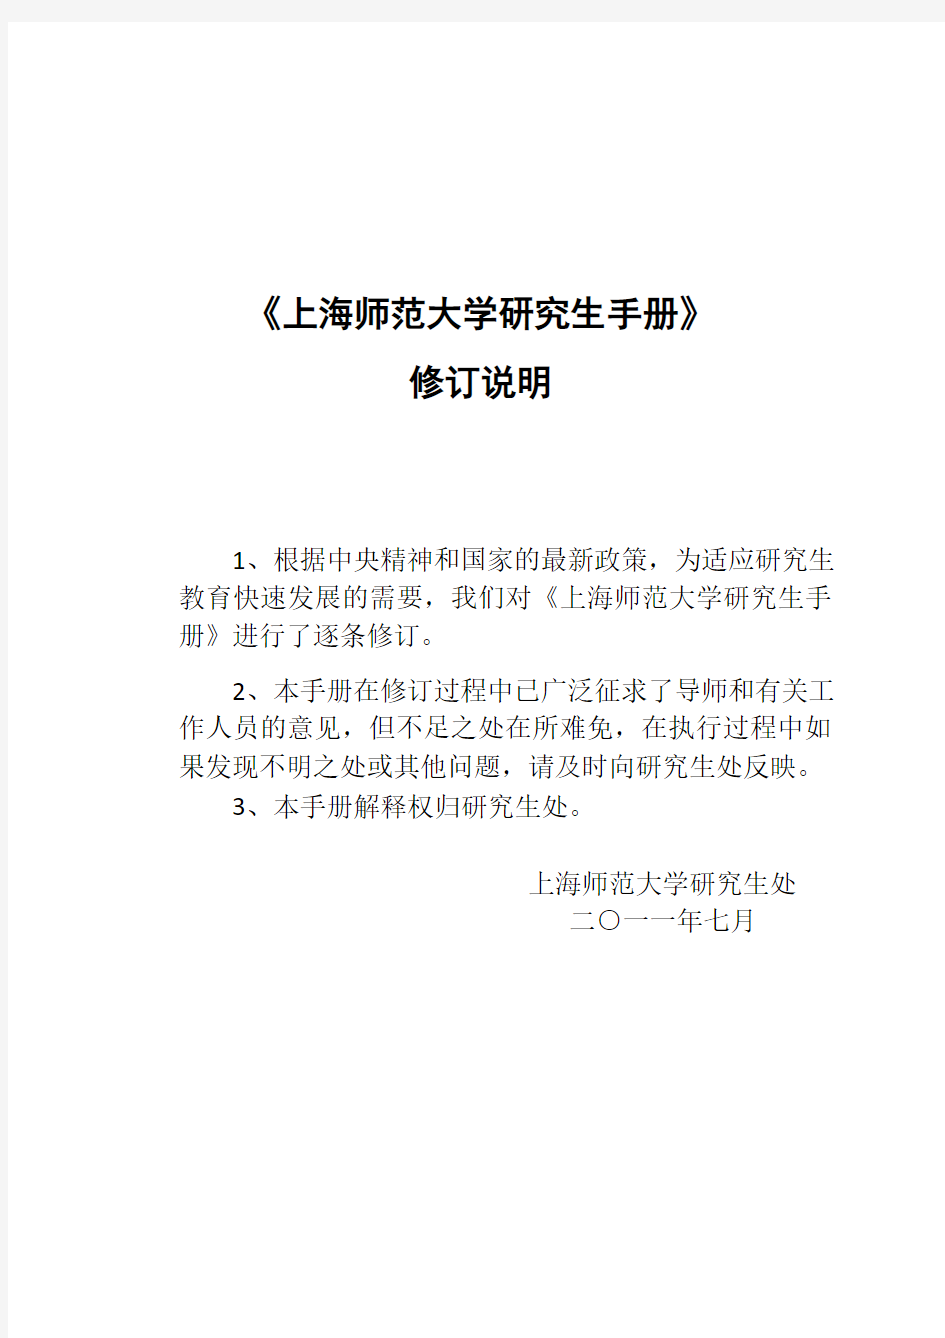 上海师范大学研究生手册(11年)